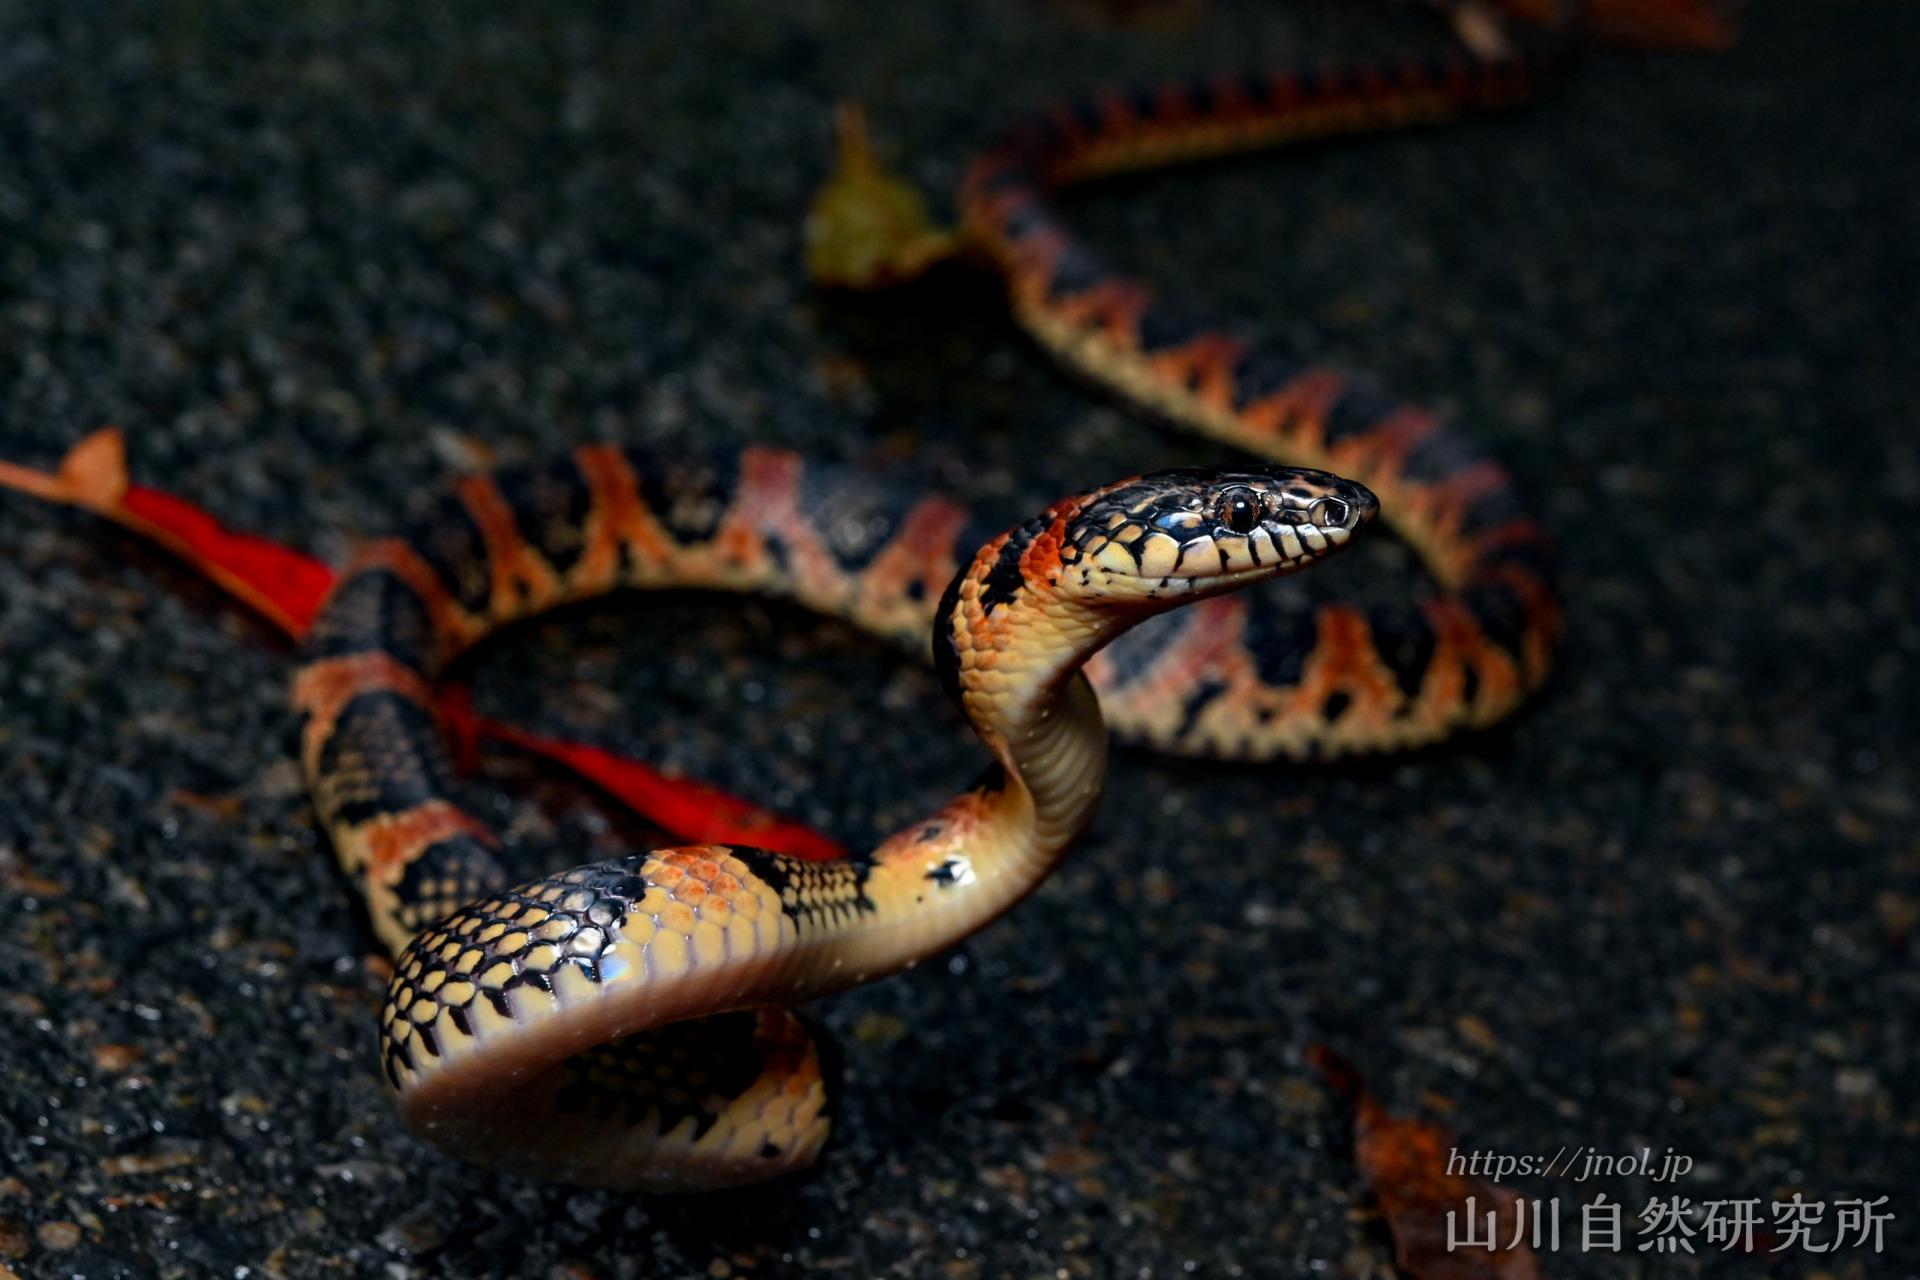 アカマタ 毒蛇ハブをも食べる 美しくも狂暴なヘビ 山川自然研究所